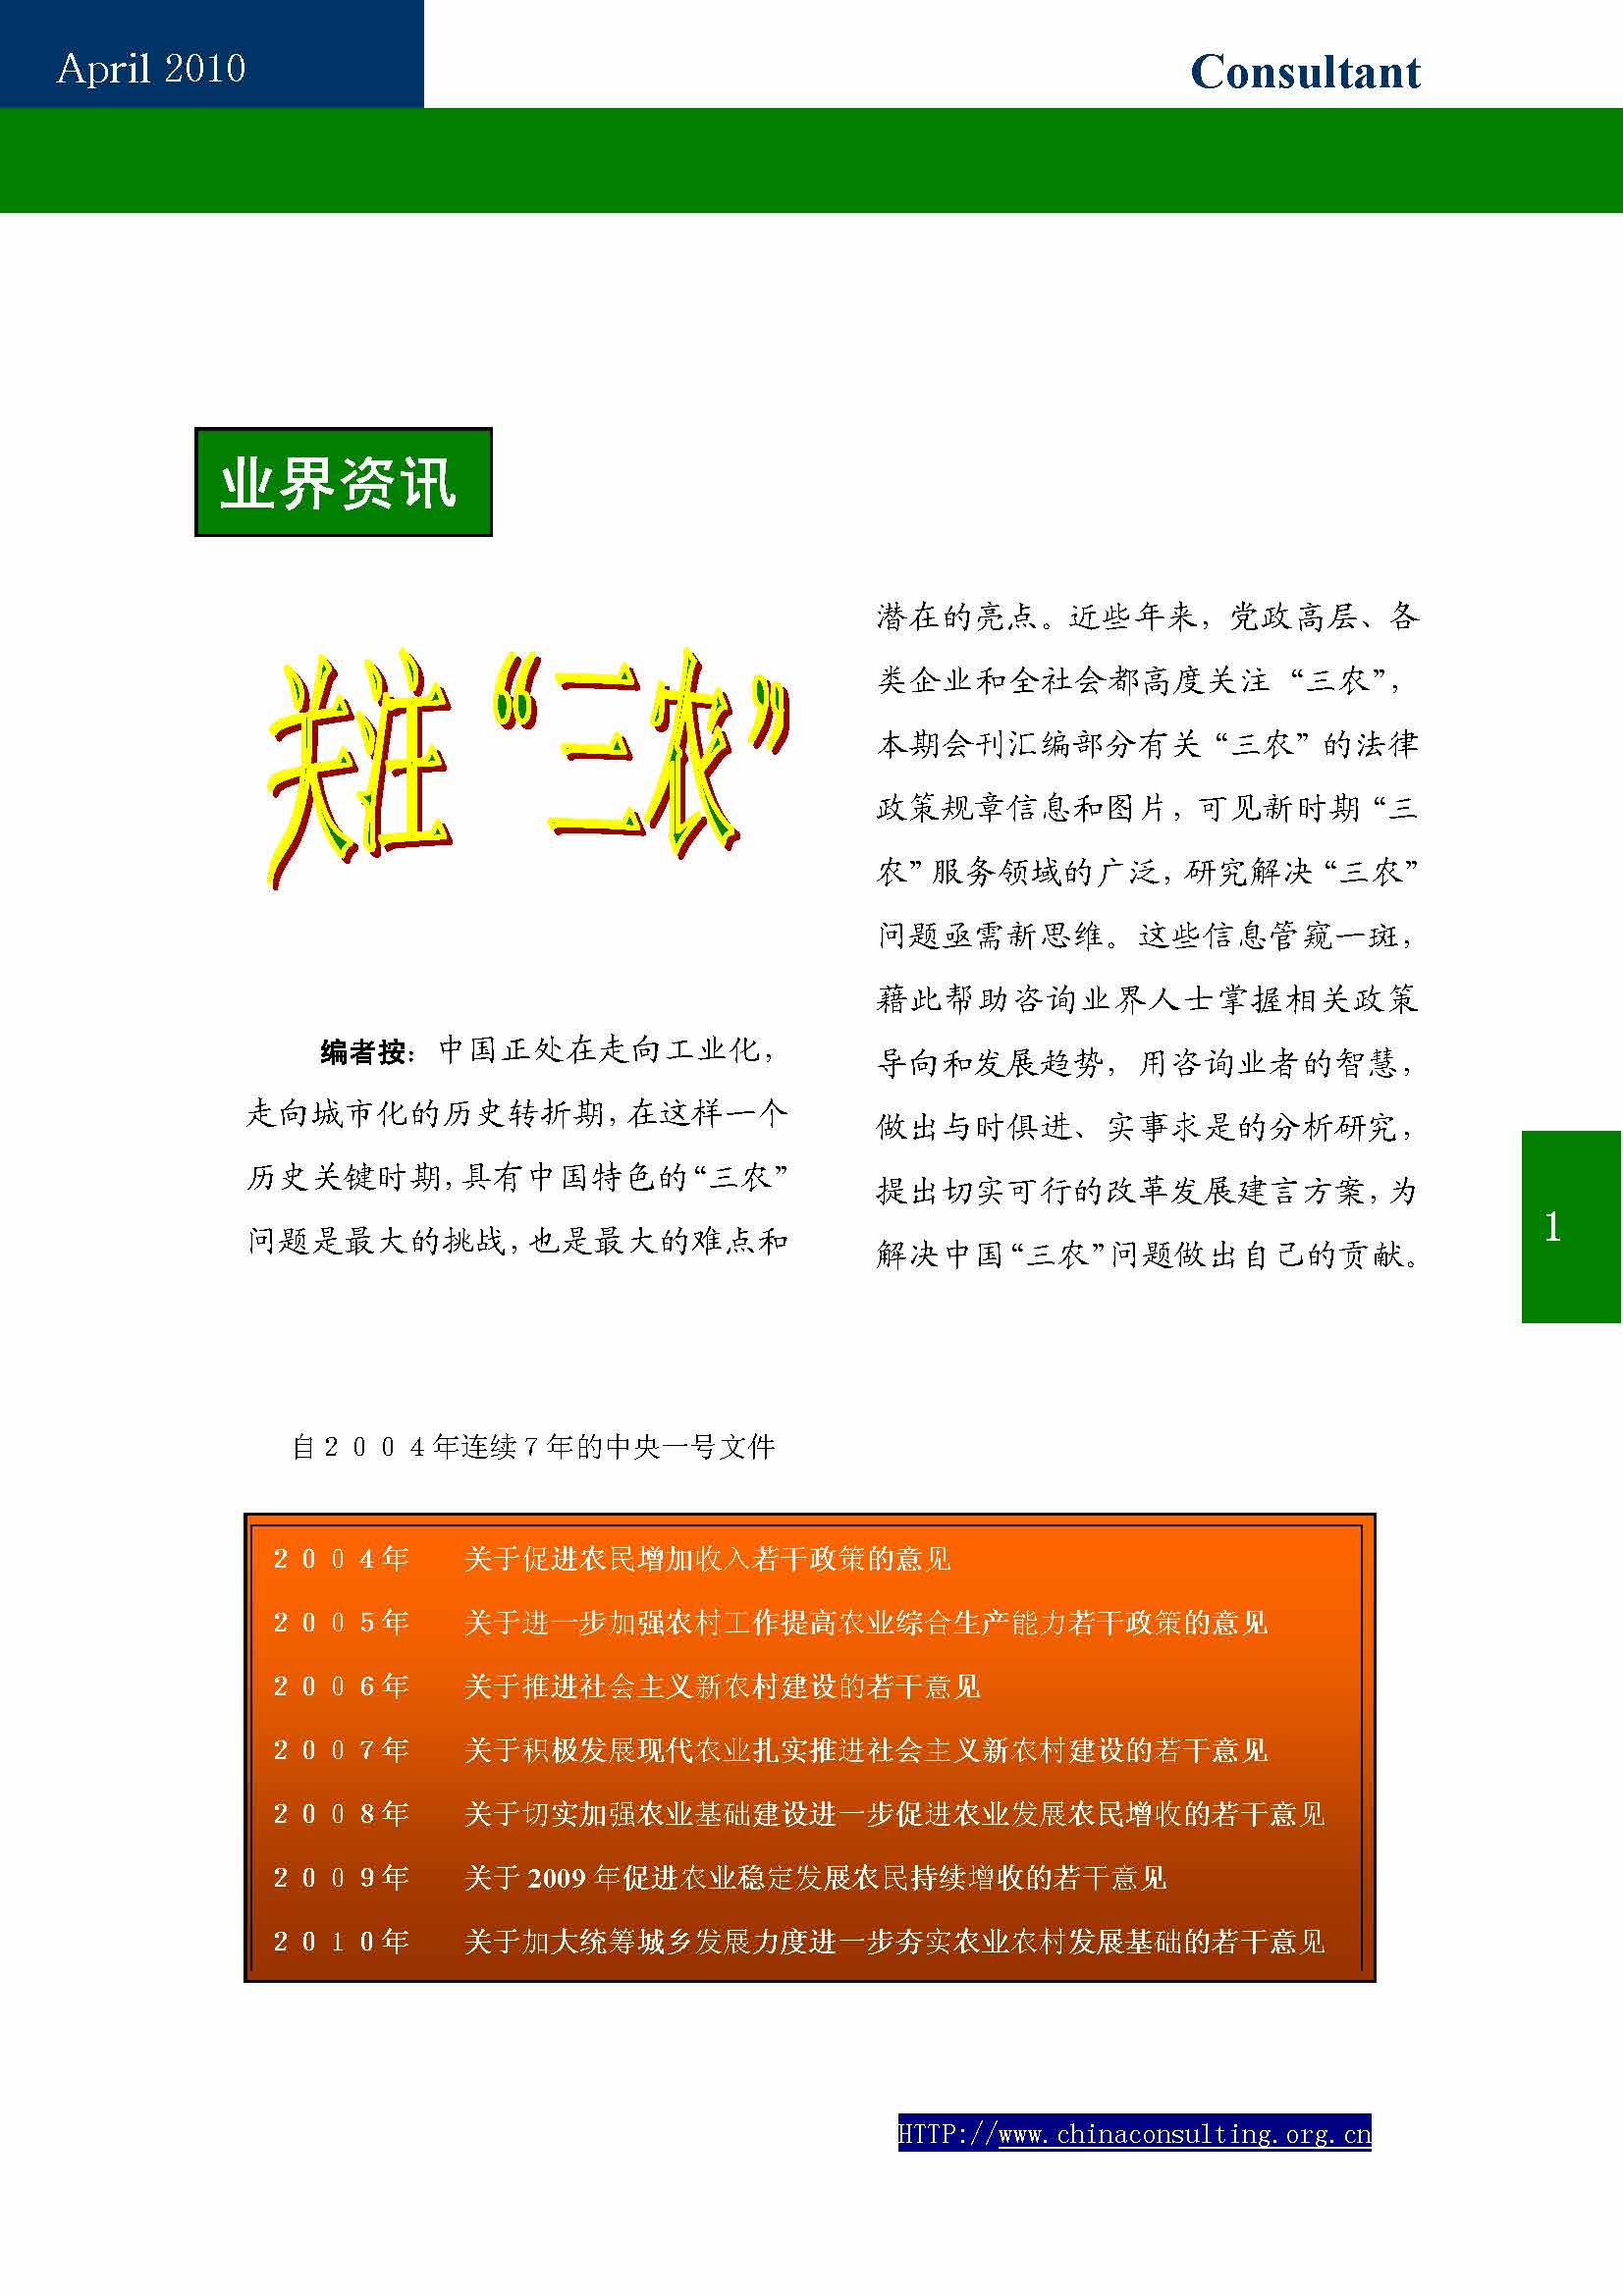 9中国科技咨询协会第九期会刊_页面_03.jpg